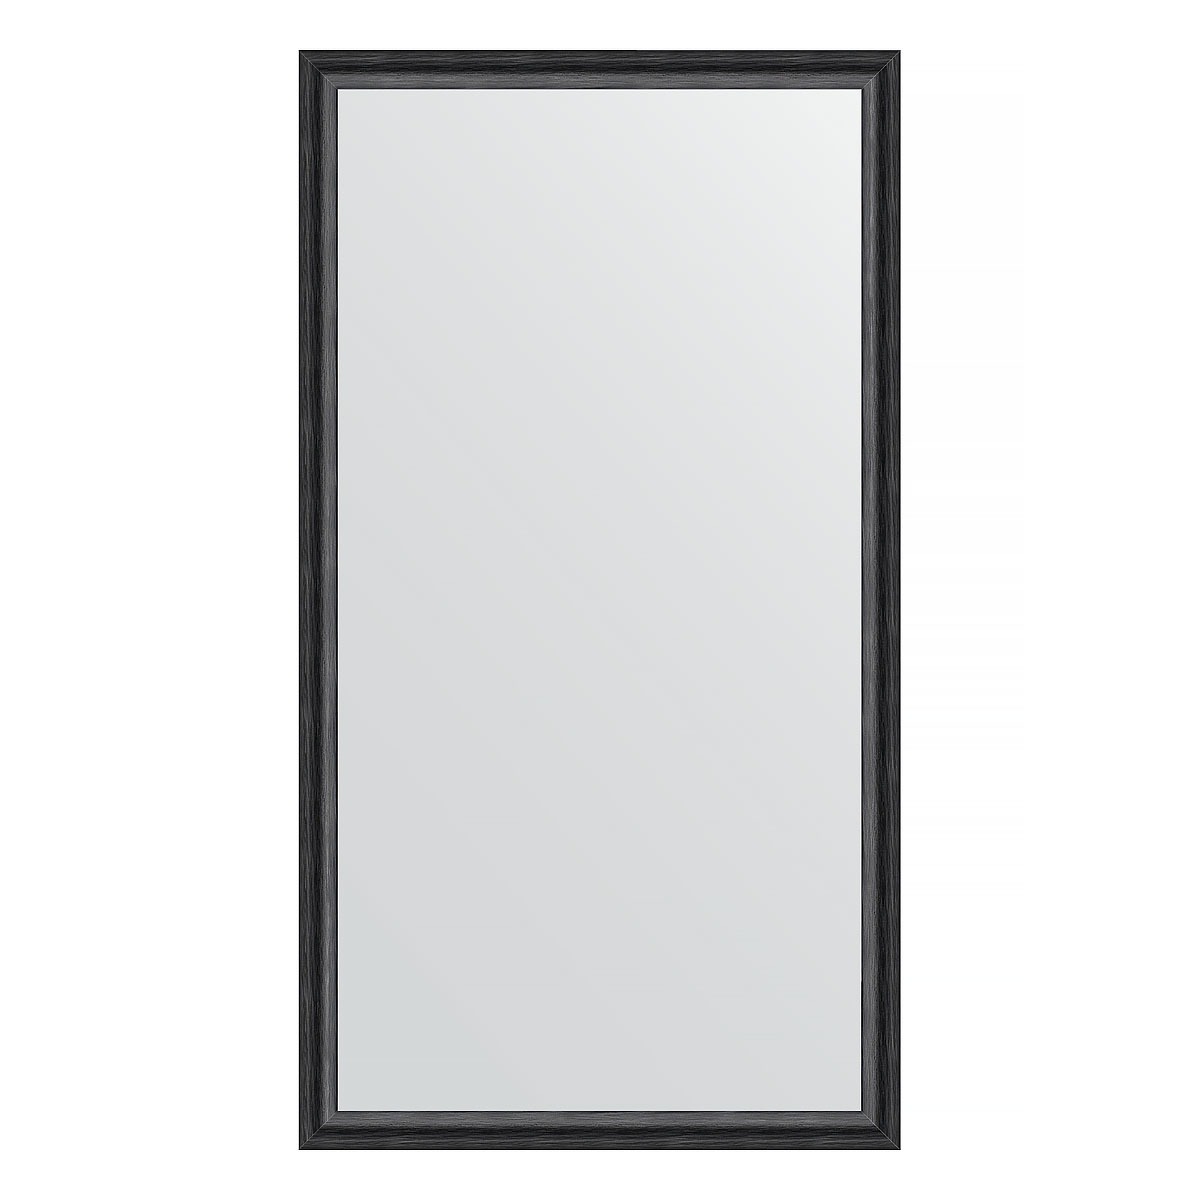 Зеркало в багетной раме Evoform черный дуб 37 мм 60х110 см зеркало в багетной раме evoform дуб 37 мм 60х110 см